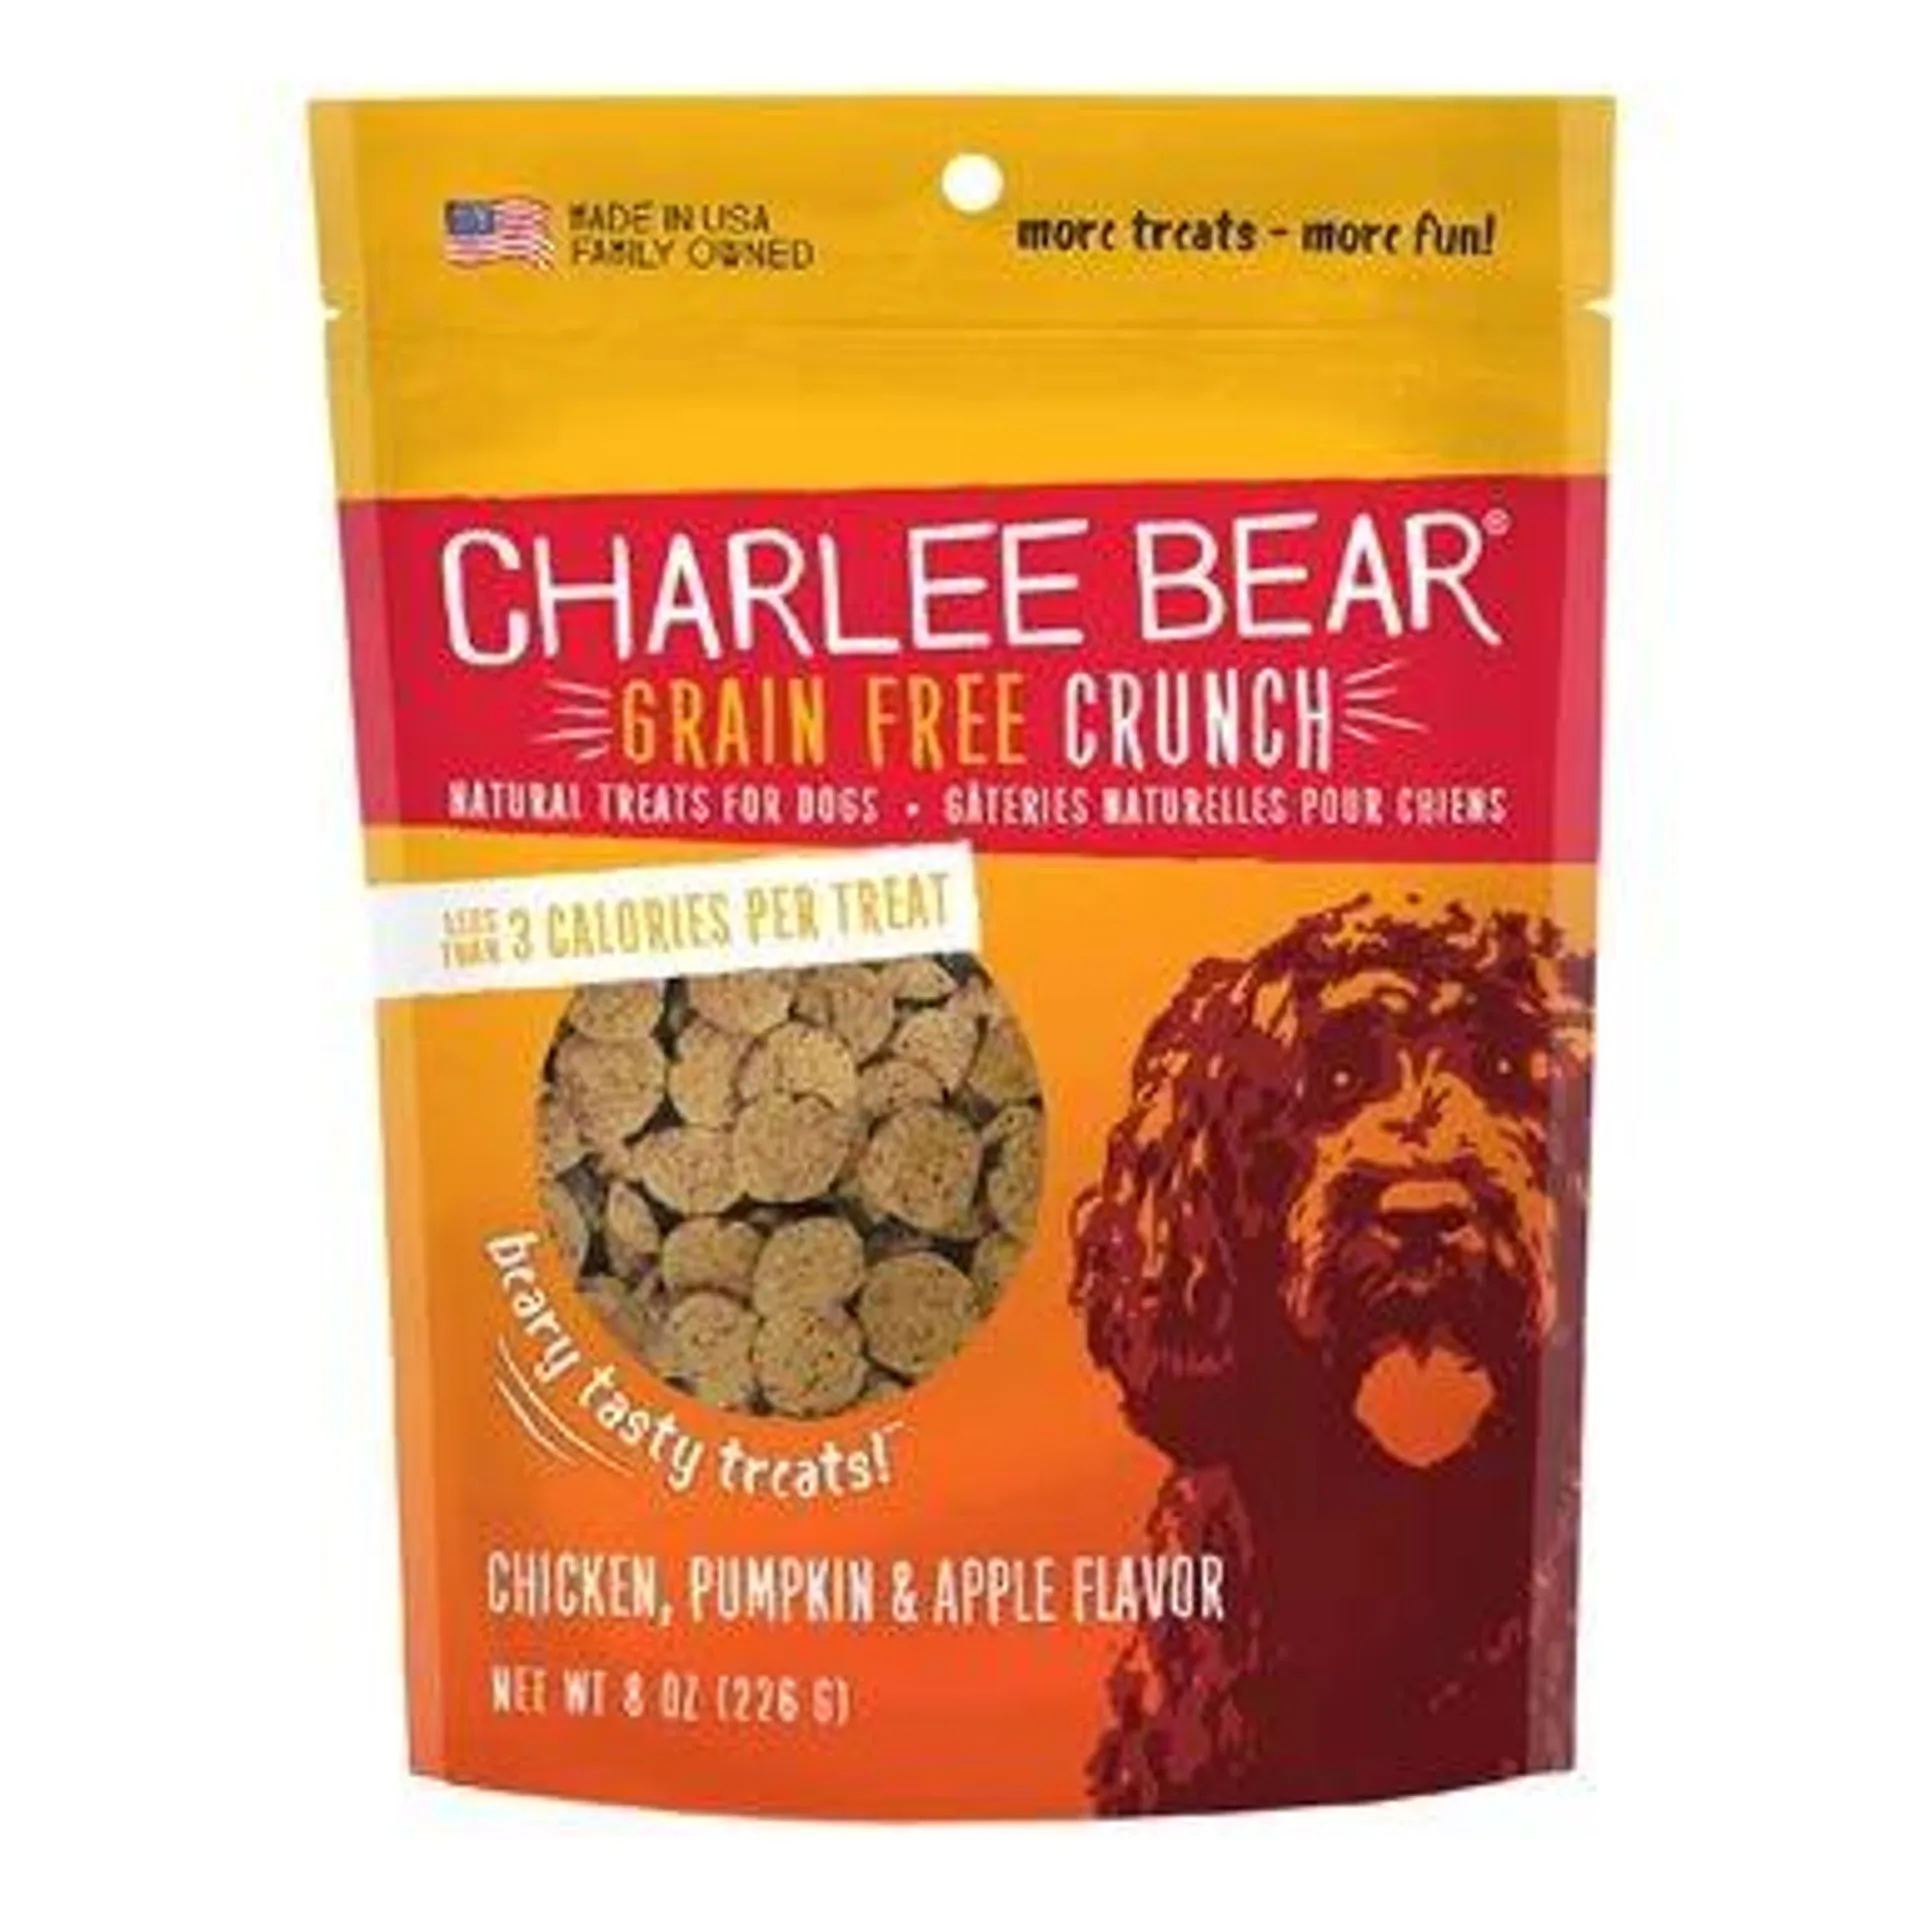 Charlee Bear Grain Free Chicken, Pumpkin & Apple Bear Crunch Dog Treats, 8 Ounces